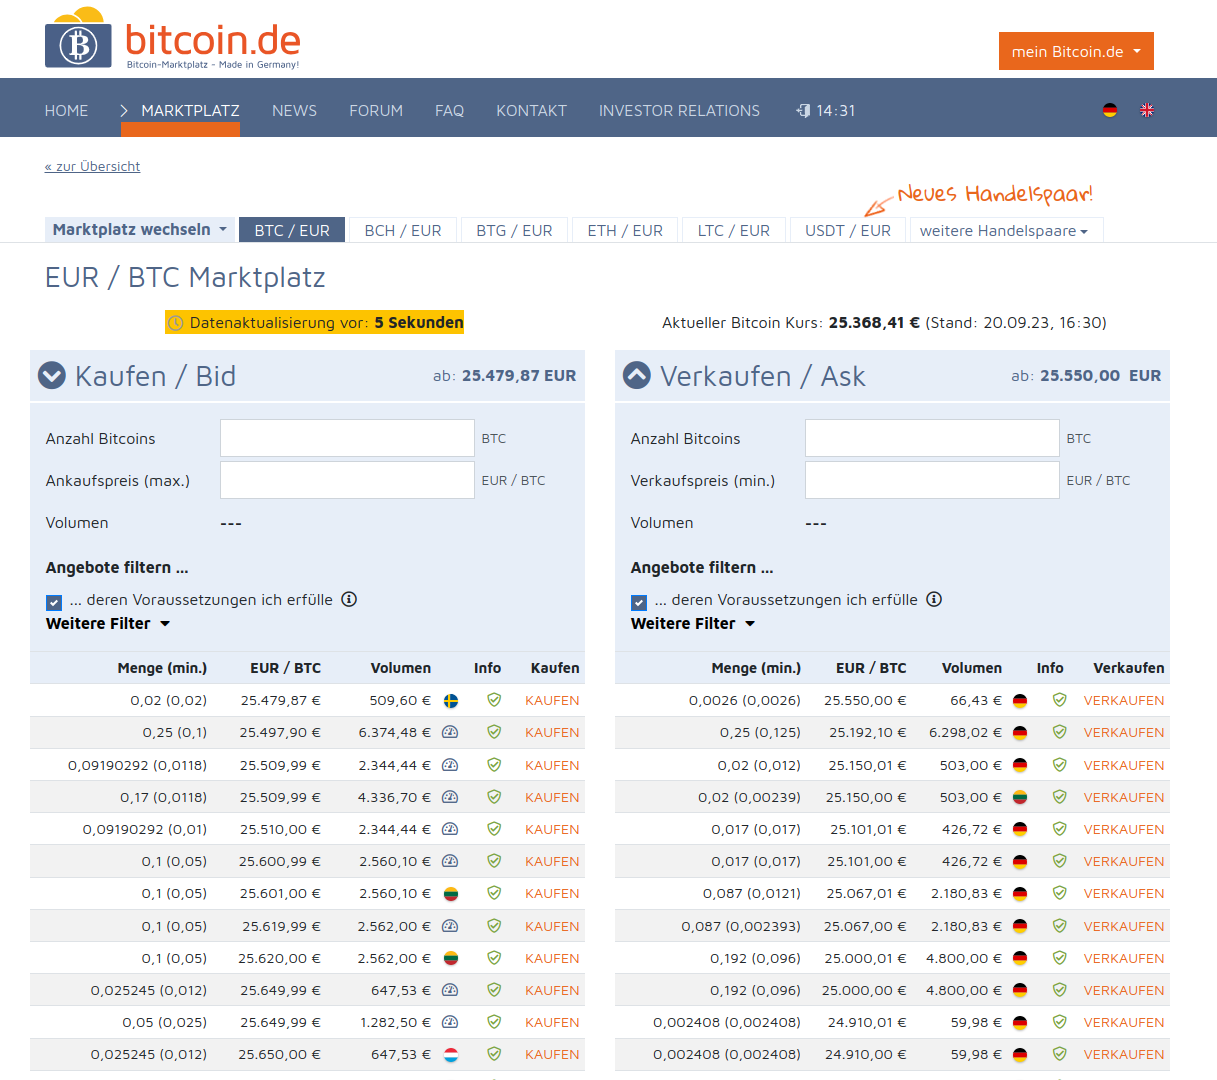 Marktplatz auf Bitcoin.de: Links findest du die Angebote, um Bitcoin für Euro zu kaufen und rechts kannst du Bitcoin wieder verkaufen.